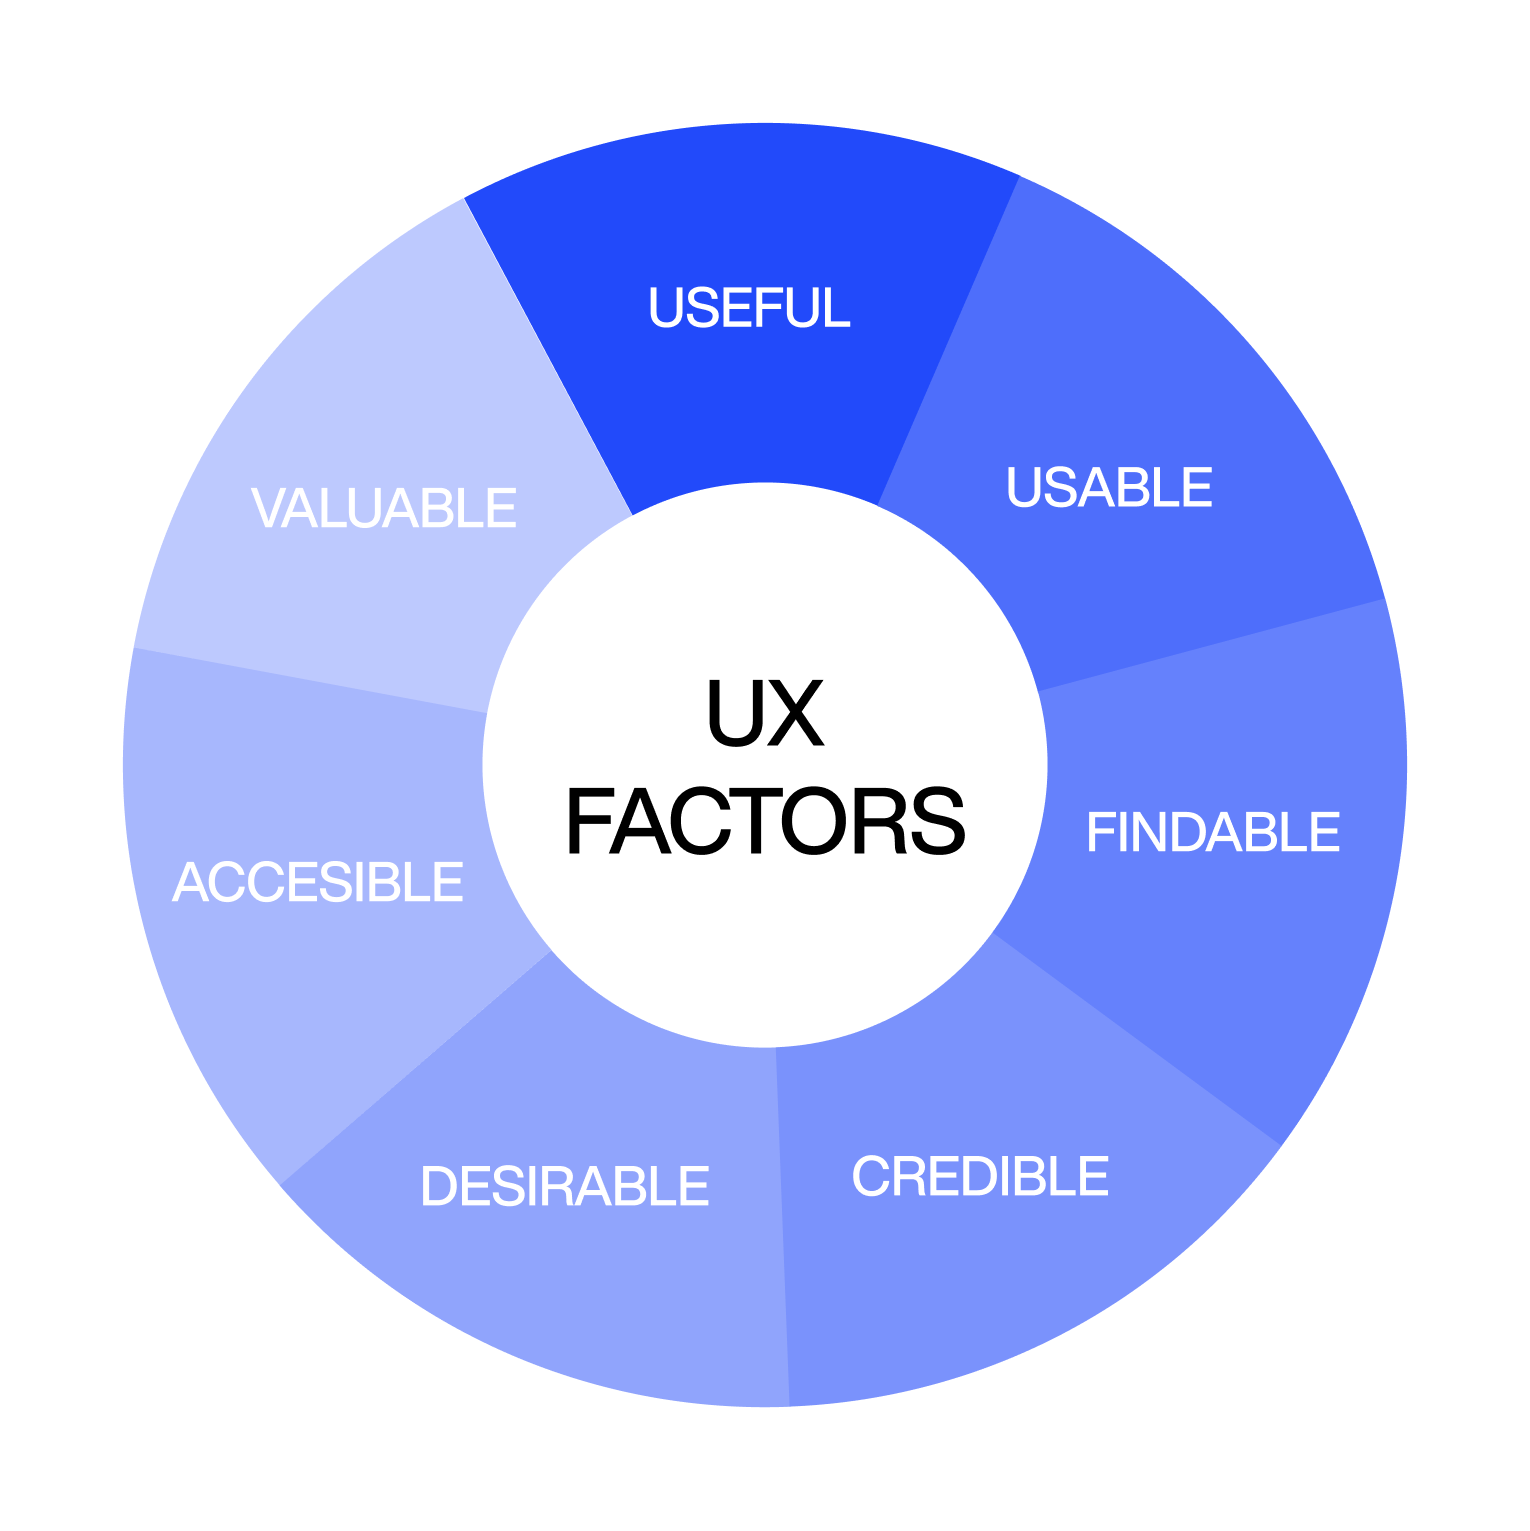 UX factors